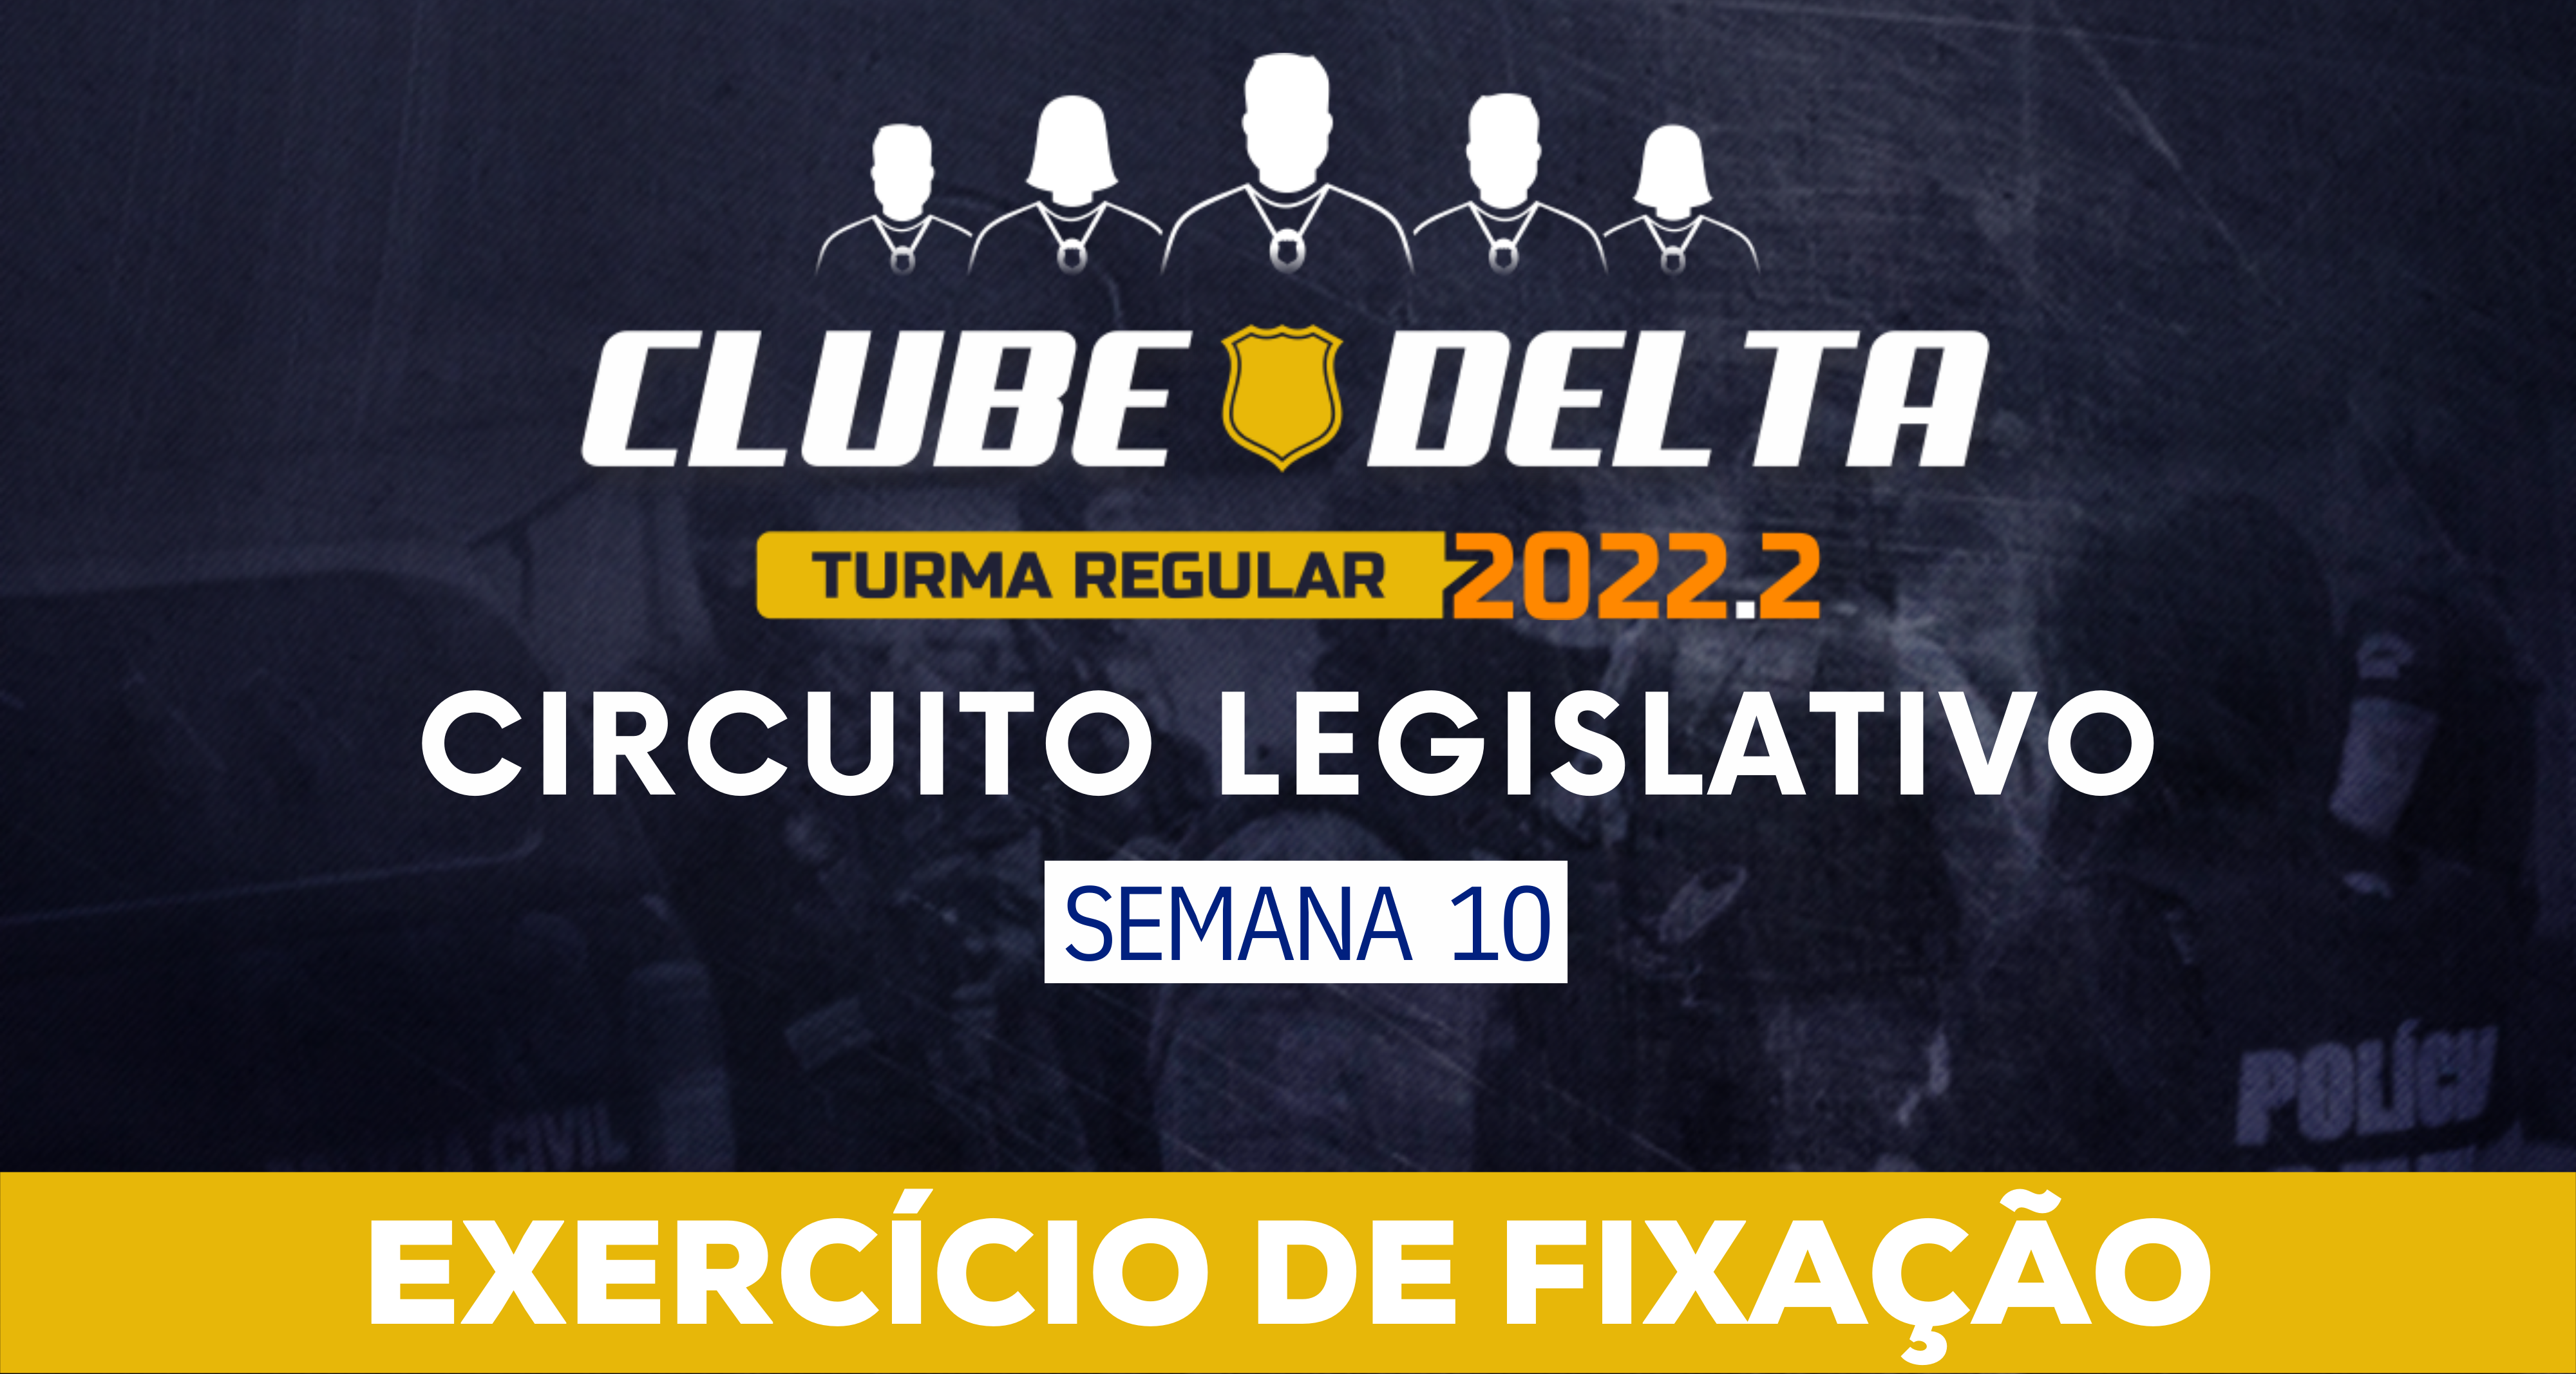 Circuito Legislativo 2022.2 (Clube Delta - Semana 10)